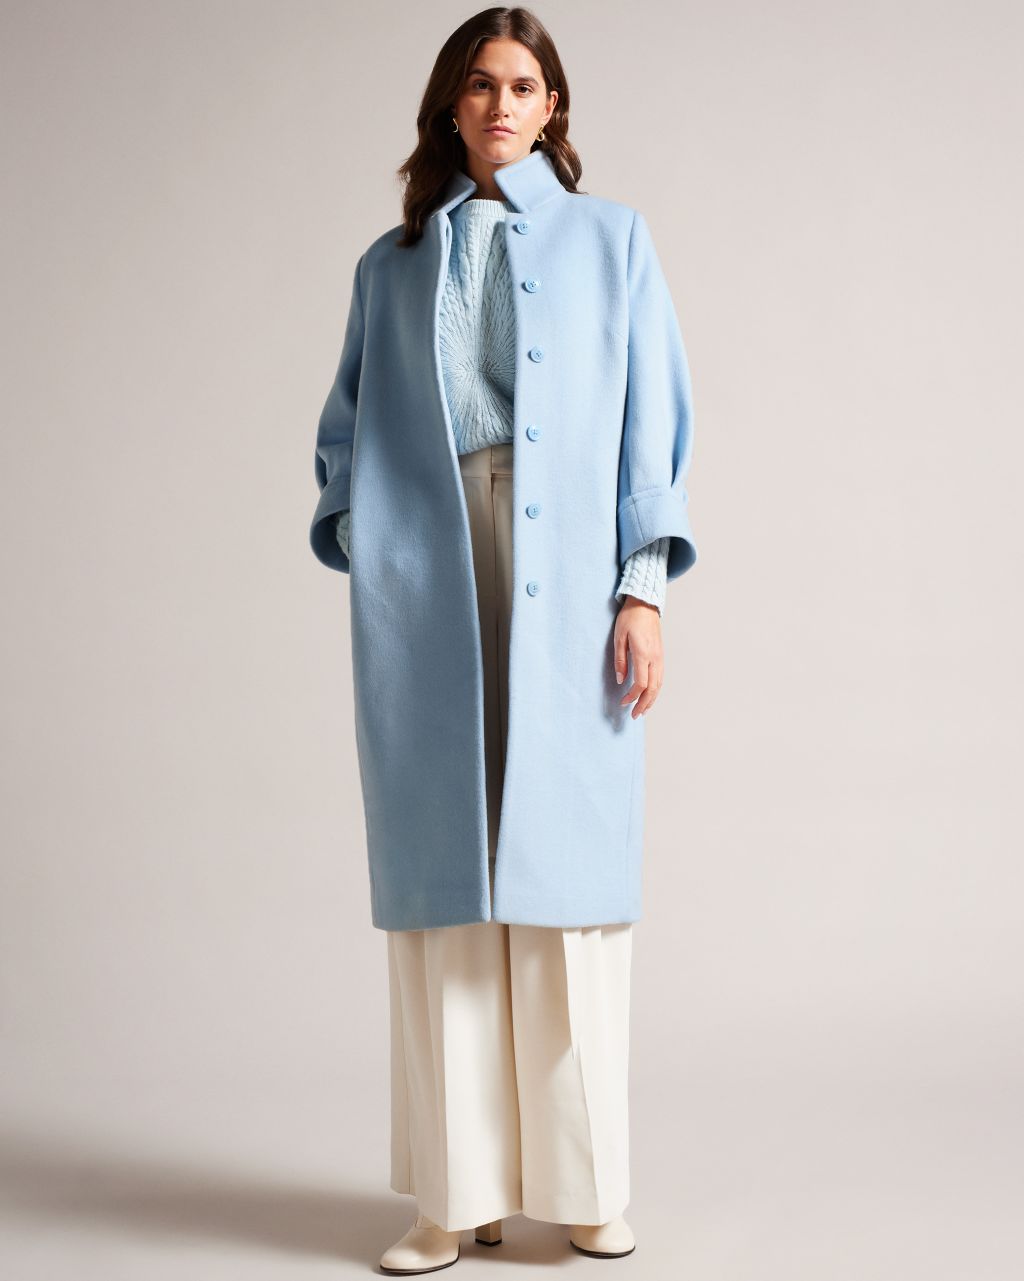 Women's Midi Length Coat With Volume Sleeves In Blue, Sairse, Wool